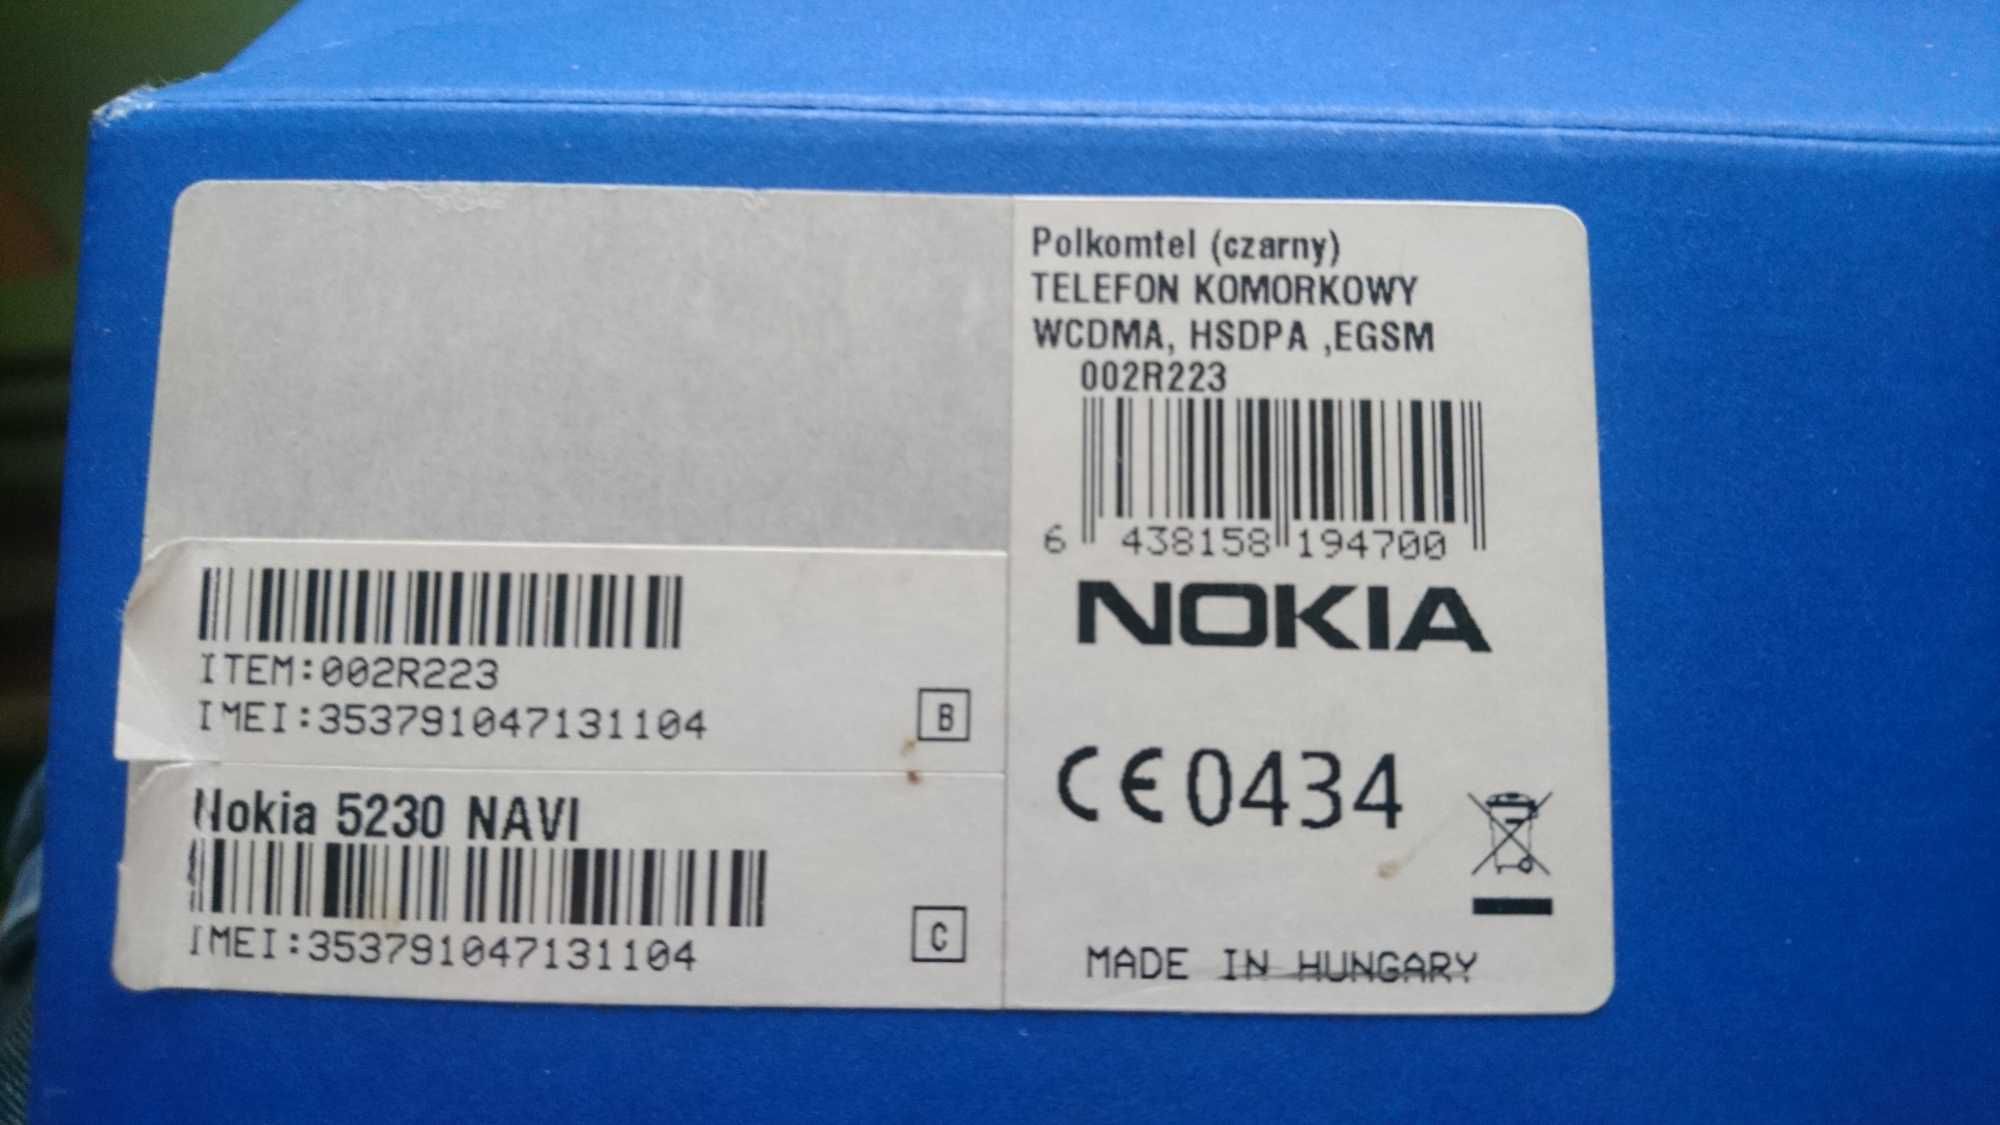 Nokia 5230 + cały zestaw, ładny sprawny egzemplarz dla kolekcjonera.